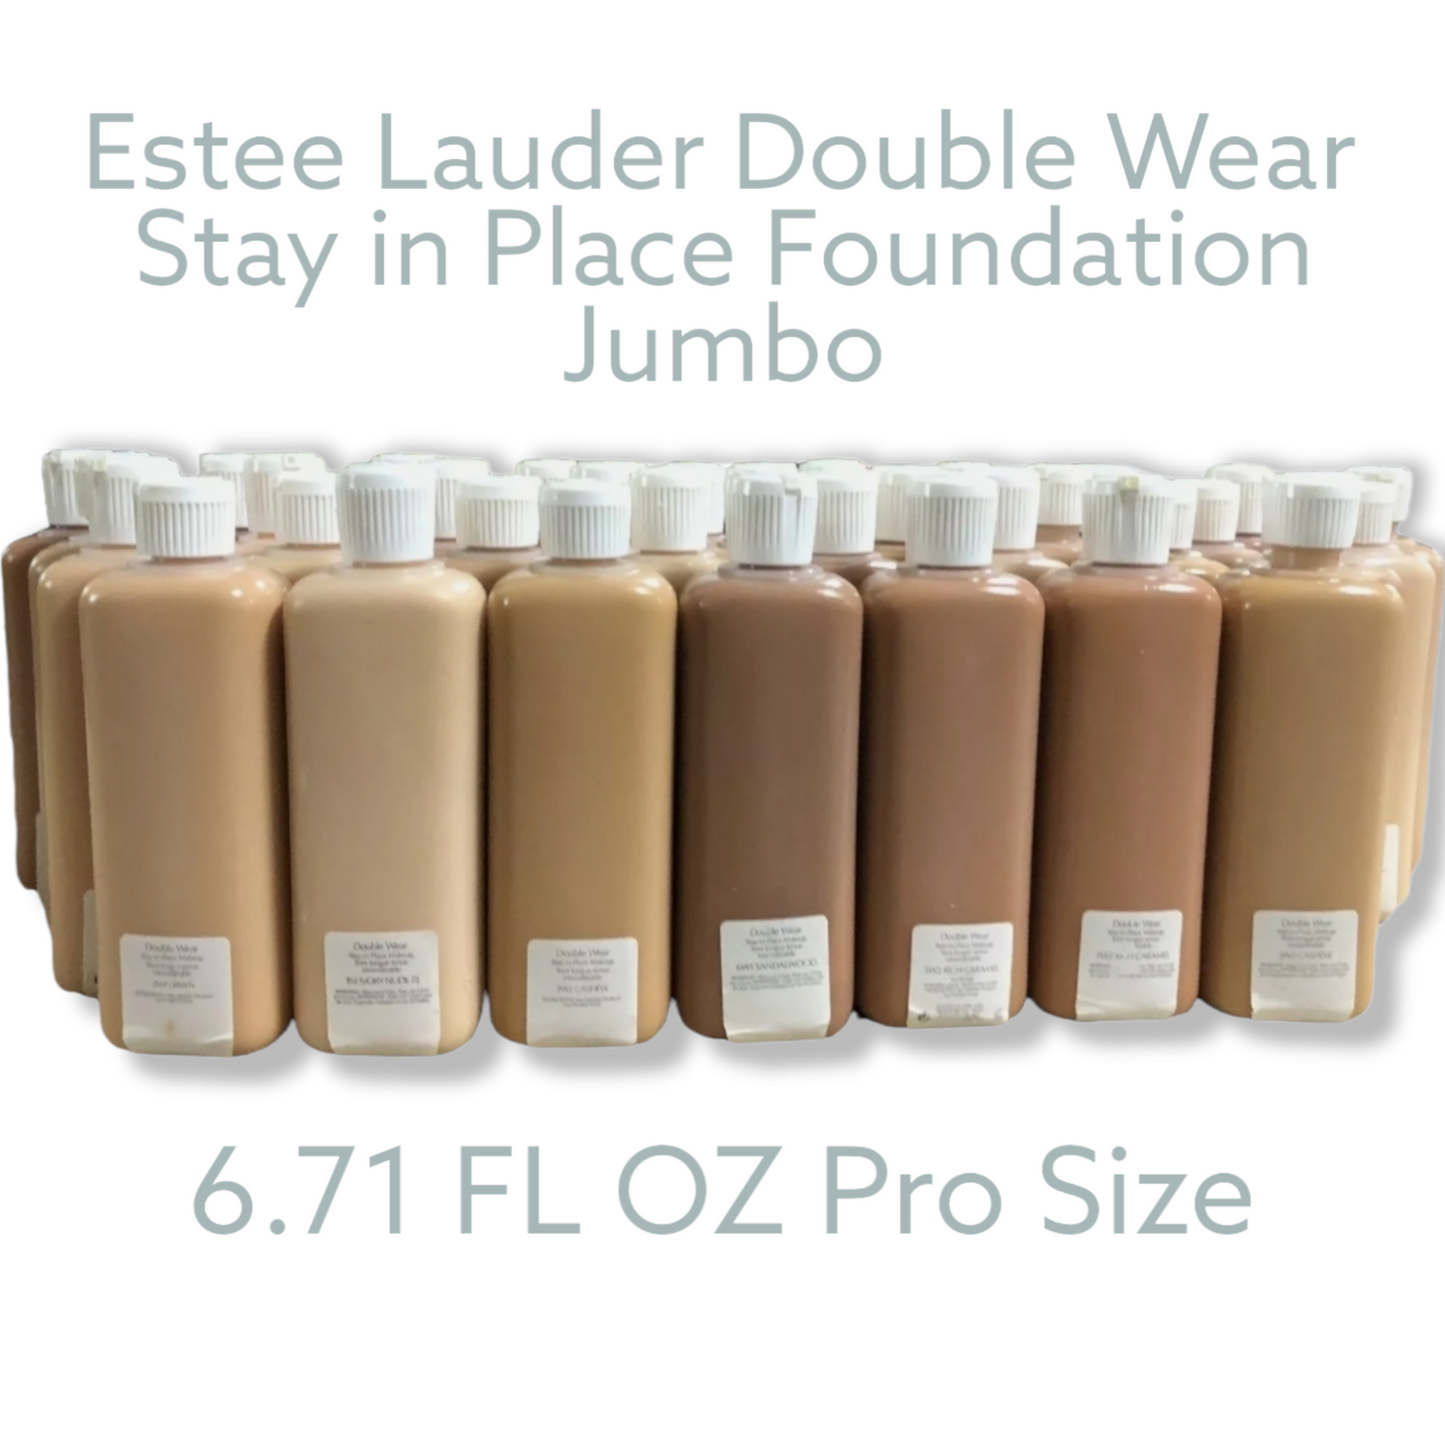 Estee Lauder Double Wear Stay in Place Foundation Jumbo 6.71 FL OZ Size Pro